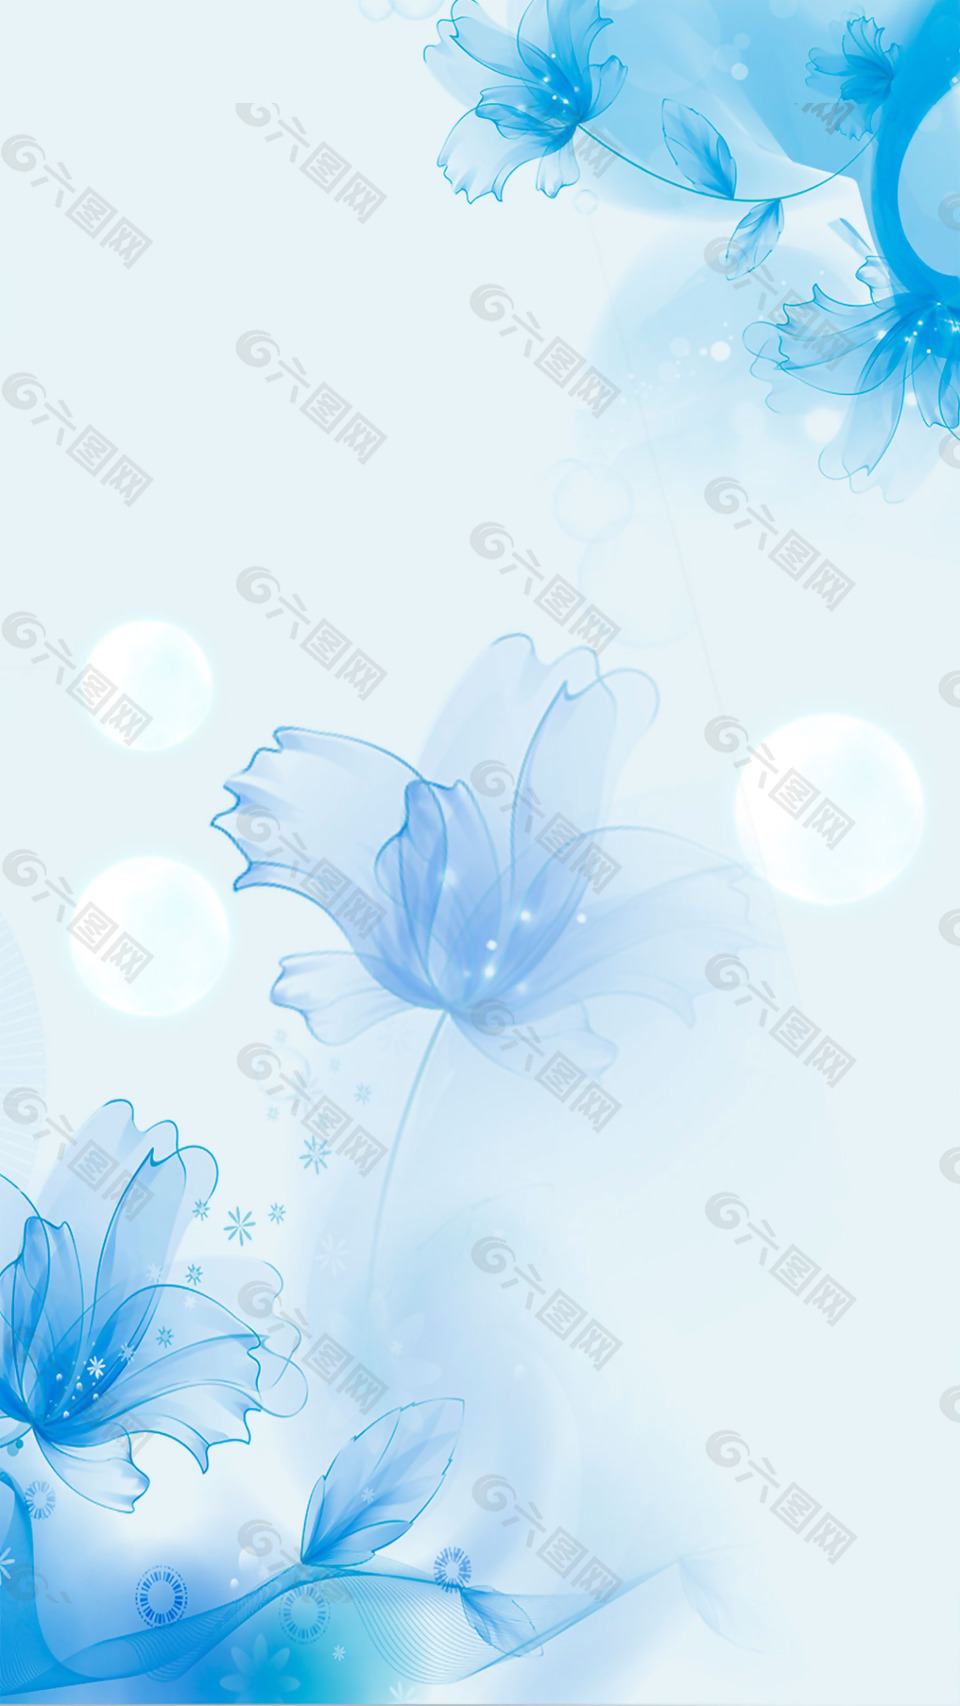 梦幻蓝色花朵H5背景素材